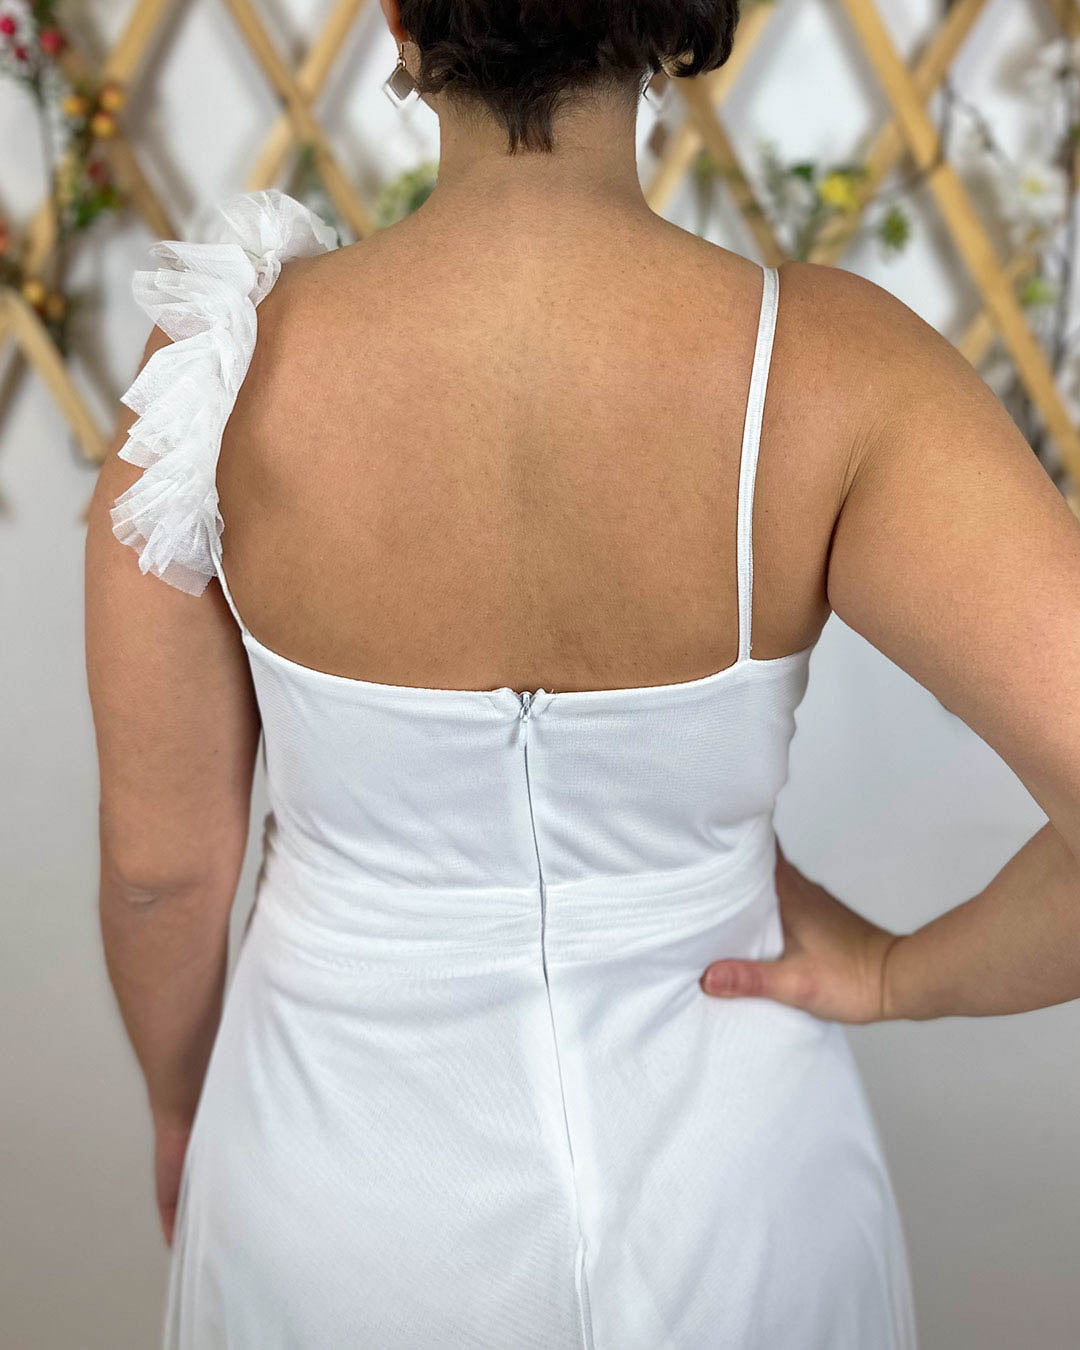 Vestido de novia sencillo de color blanco y tela de tul super bonito para tu boda civil.